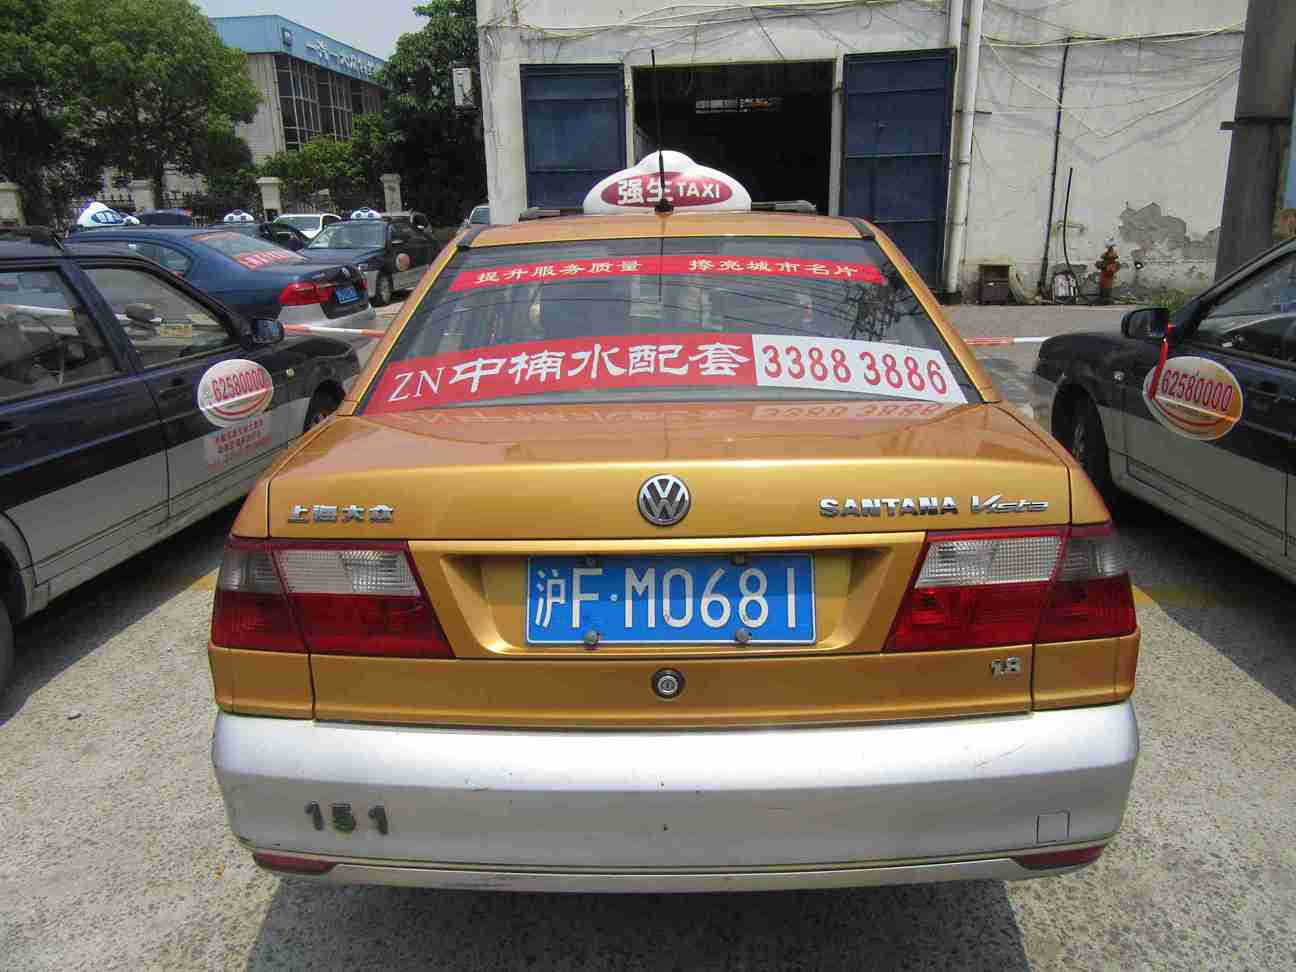   震撼发布上海出租车广告形式